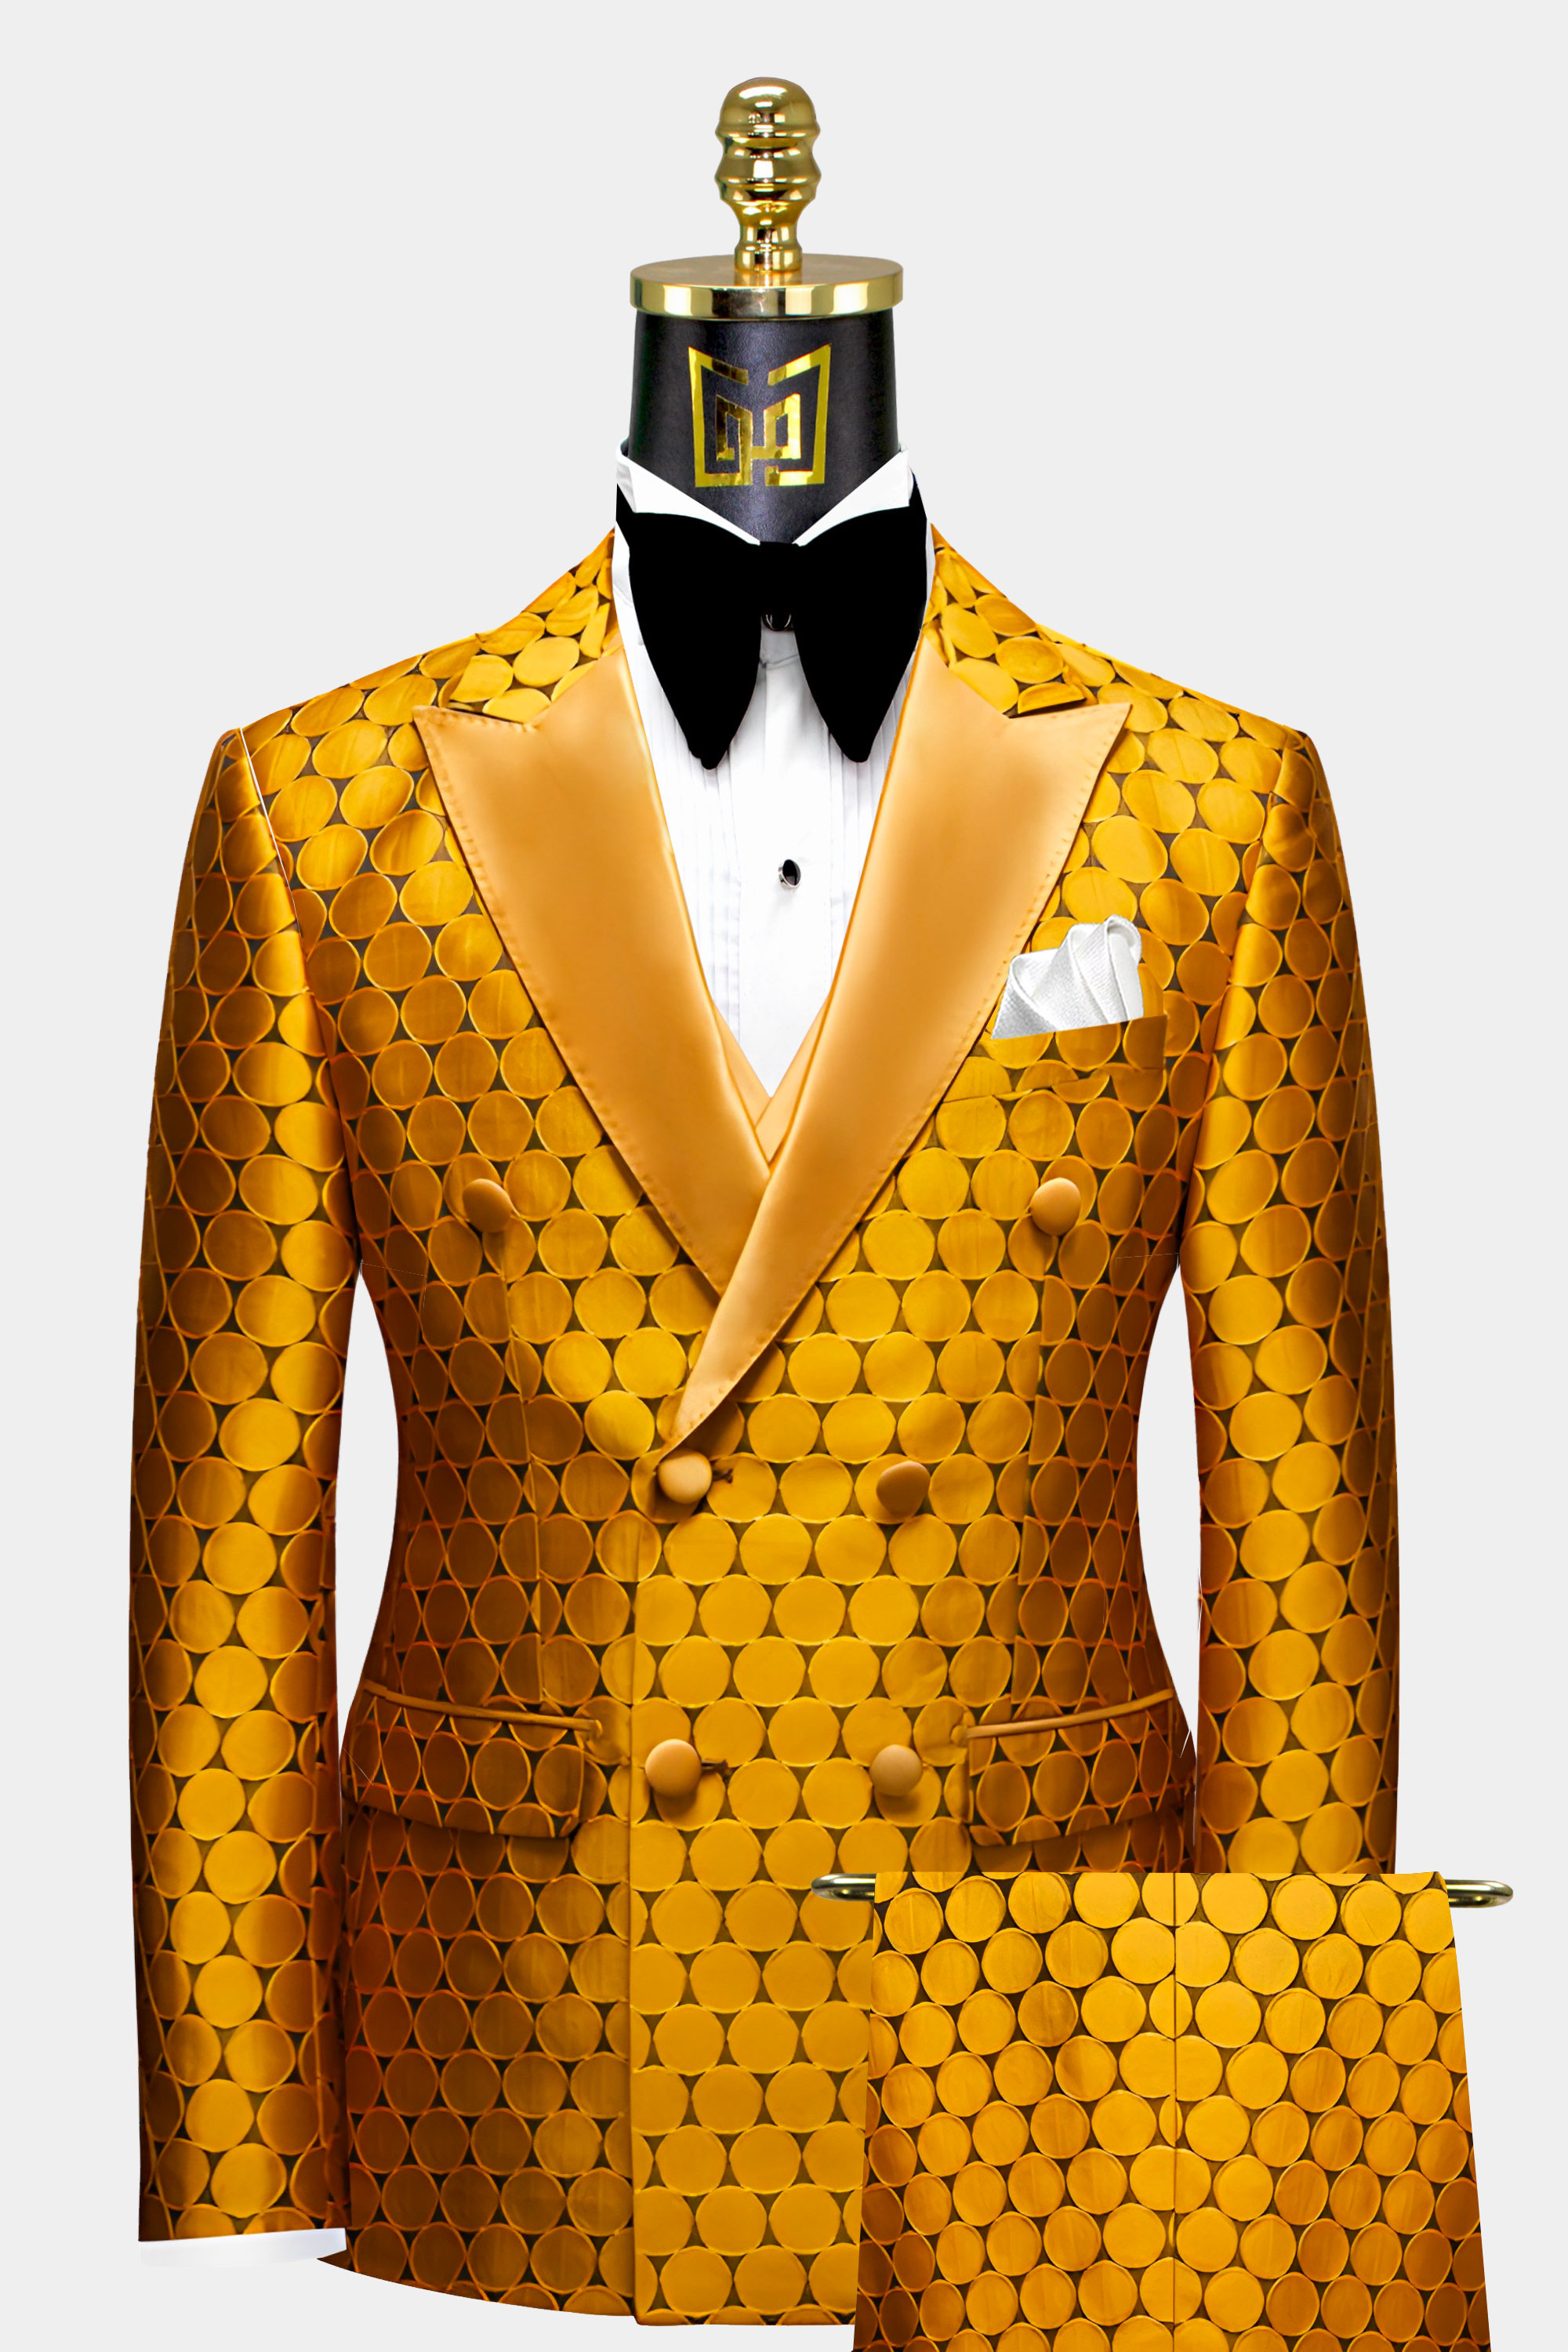 Mens-Gold-Polka-Dot-Tuxedo-Groom-Wedding-Suit-from-Gentlemansguru.com